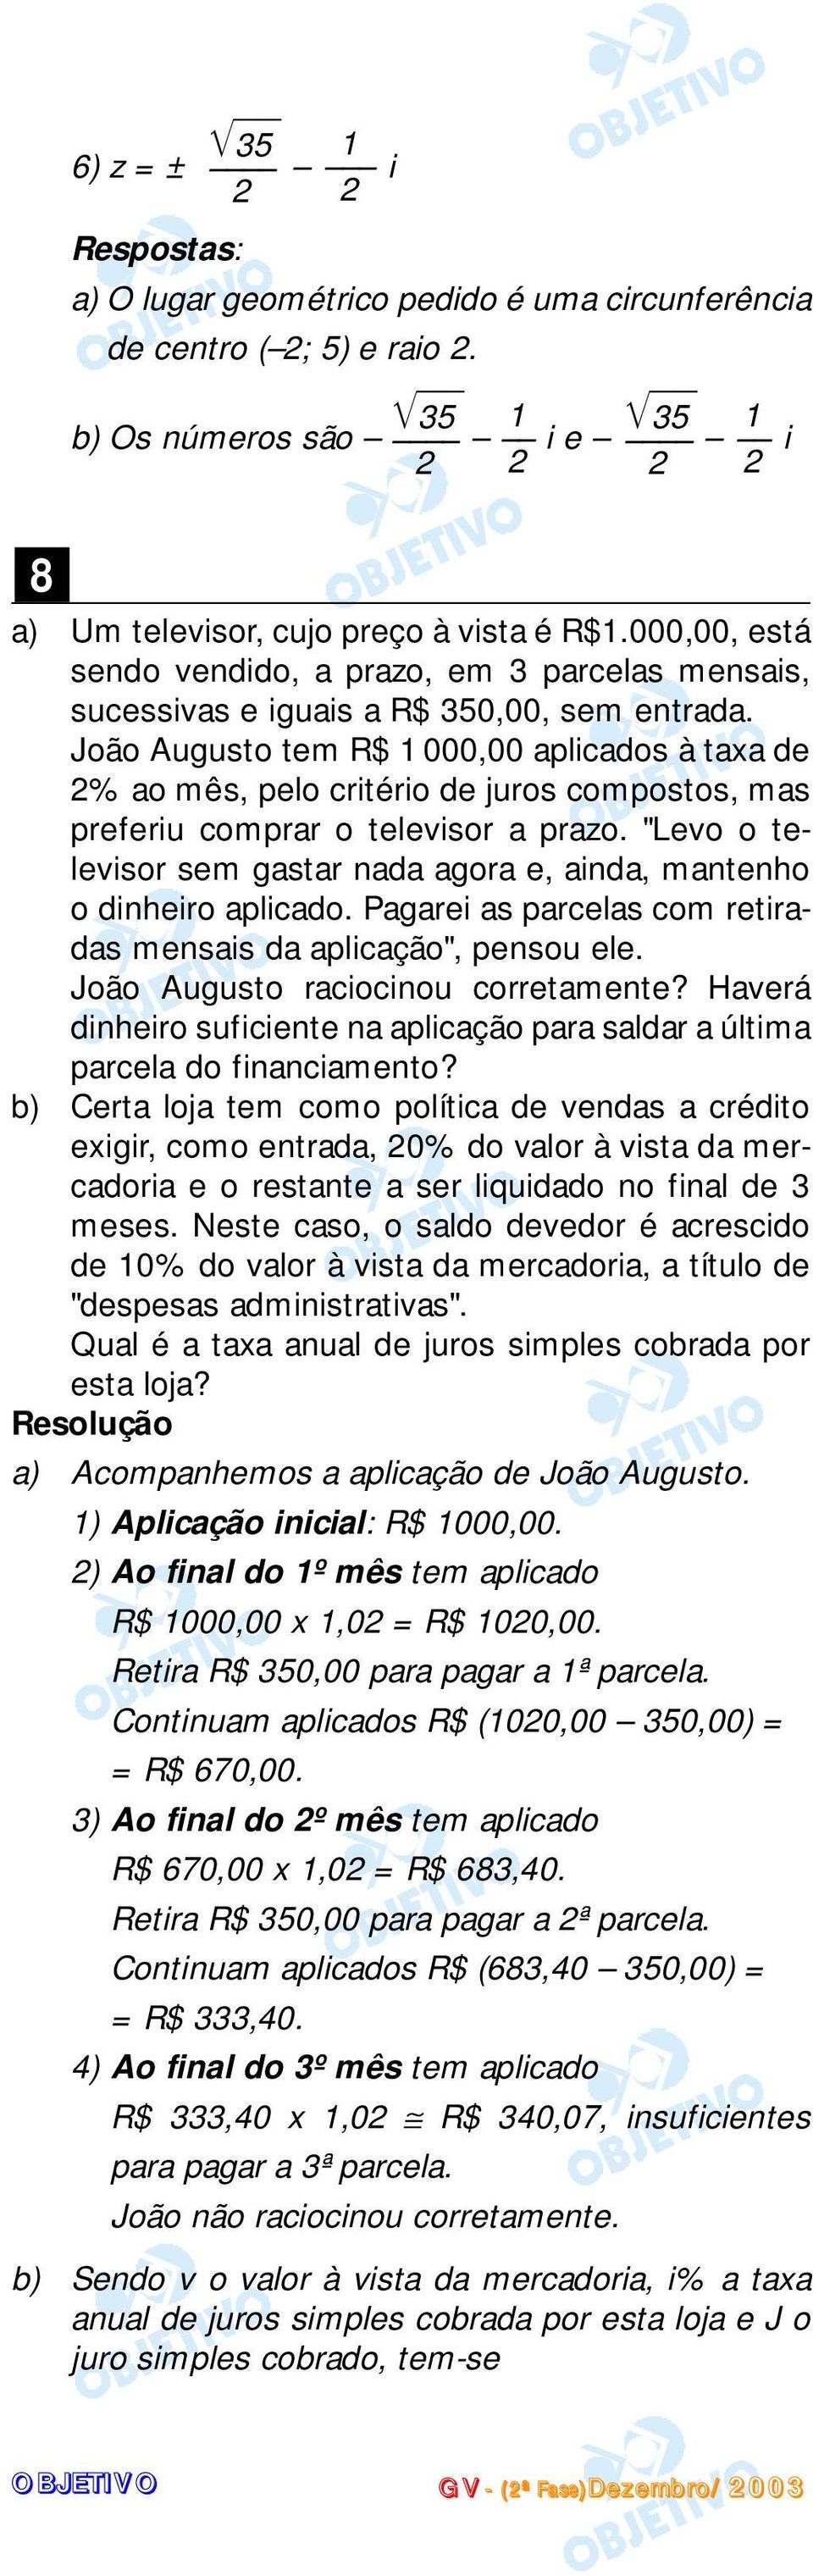 João Auguso em R$ 000,00 aplicados à axa de % ao mês, pelo criério de juros composos, mas preferiu comprar o elevisor a prazo.